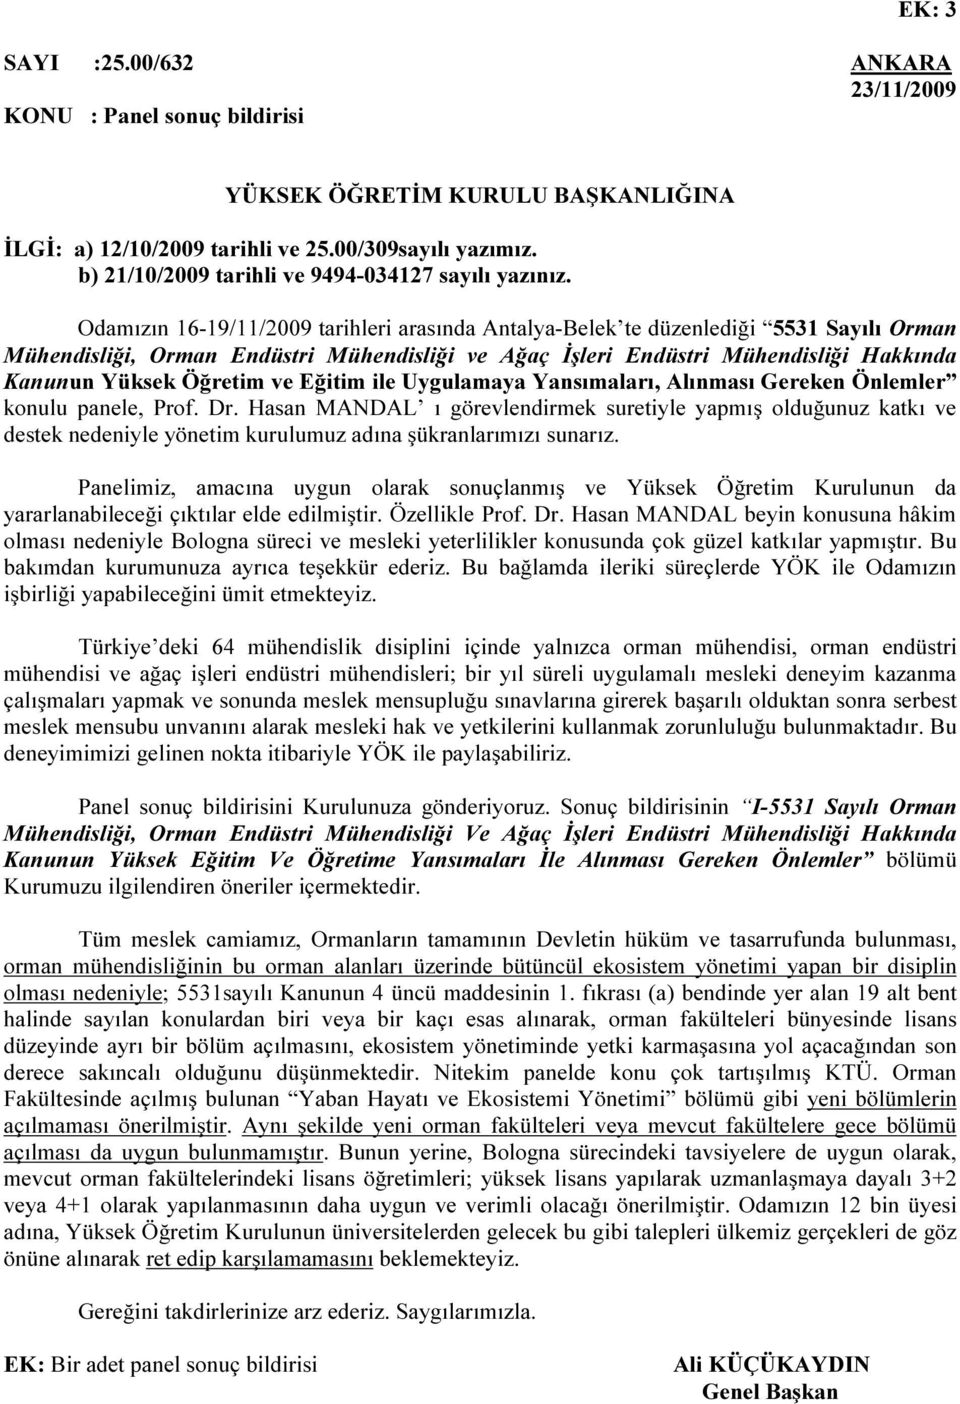 Odamızın 16-19/11/2009 tarihleri arasında Antalya-Belek te düzenlediği 5531 Sayılı Orman Mühendisliği, Orman Endüstri Mühendisliği ve Ağaç İşleri Endüstri Mühendisliği Hakkında Kanunun Yüksek Öğretim